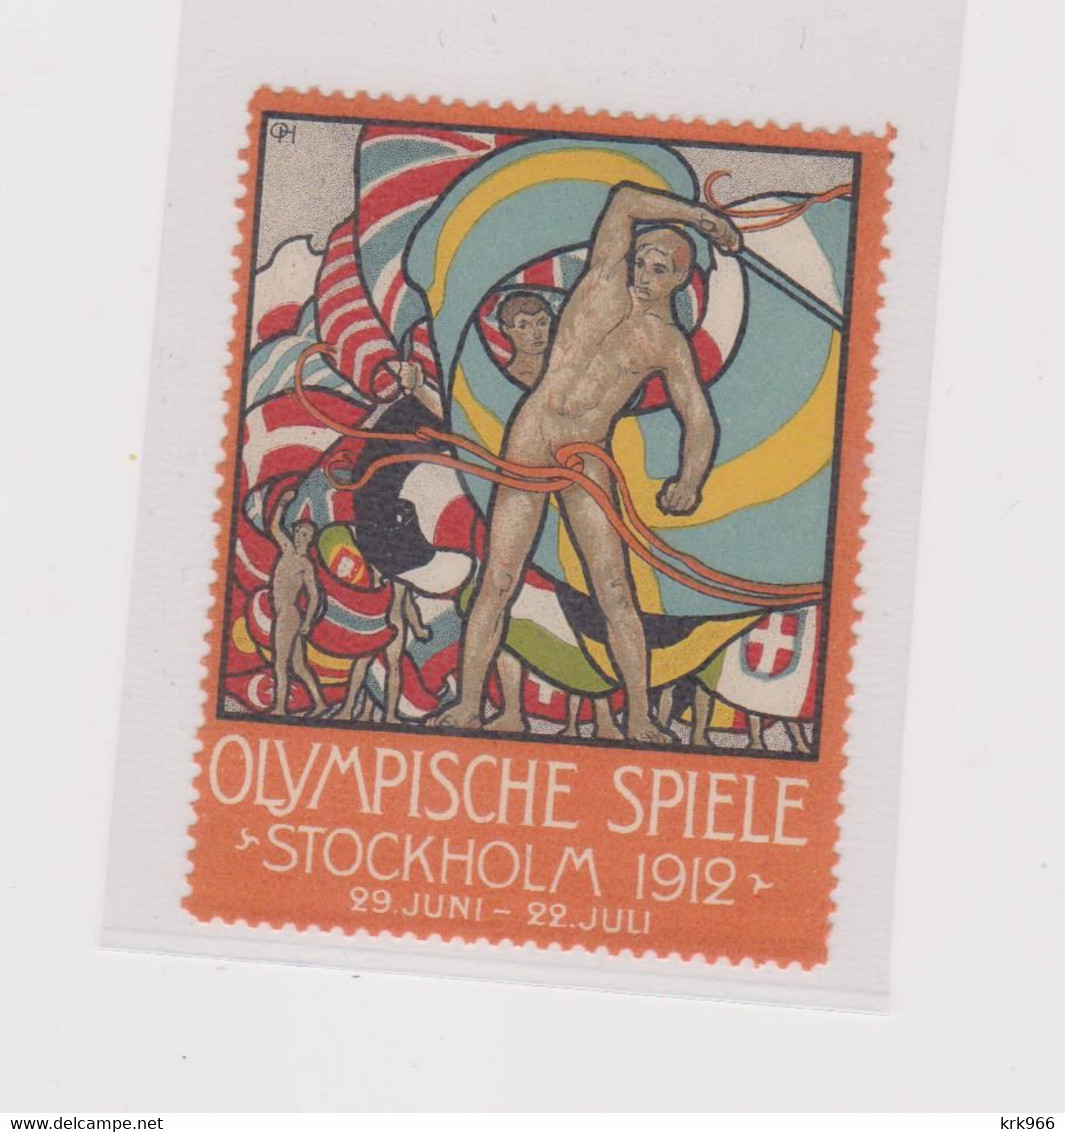 SWEDEN Poster Stamp OLYMPIC GAMES 1912 STOCKHOLM - Zomer 1912: Stockholm